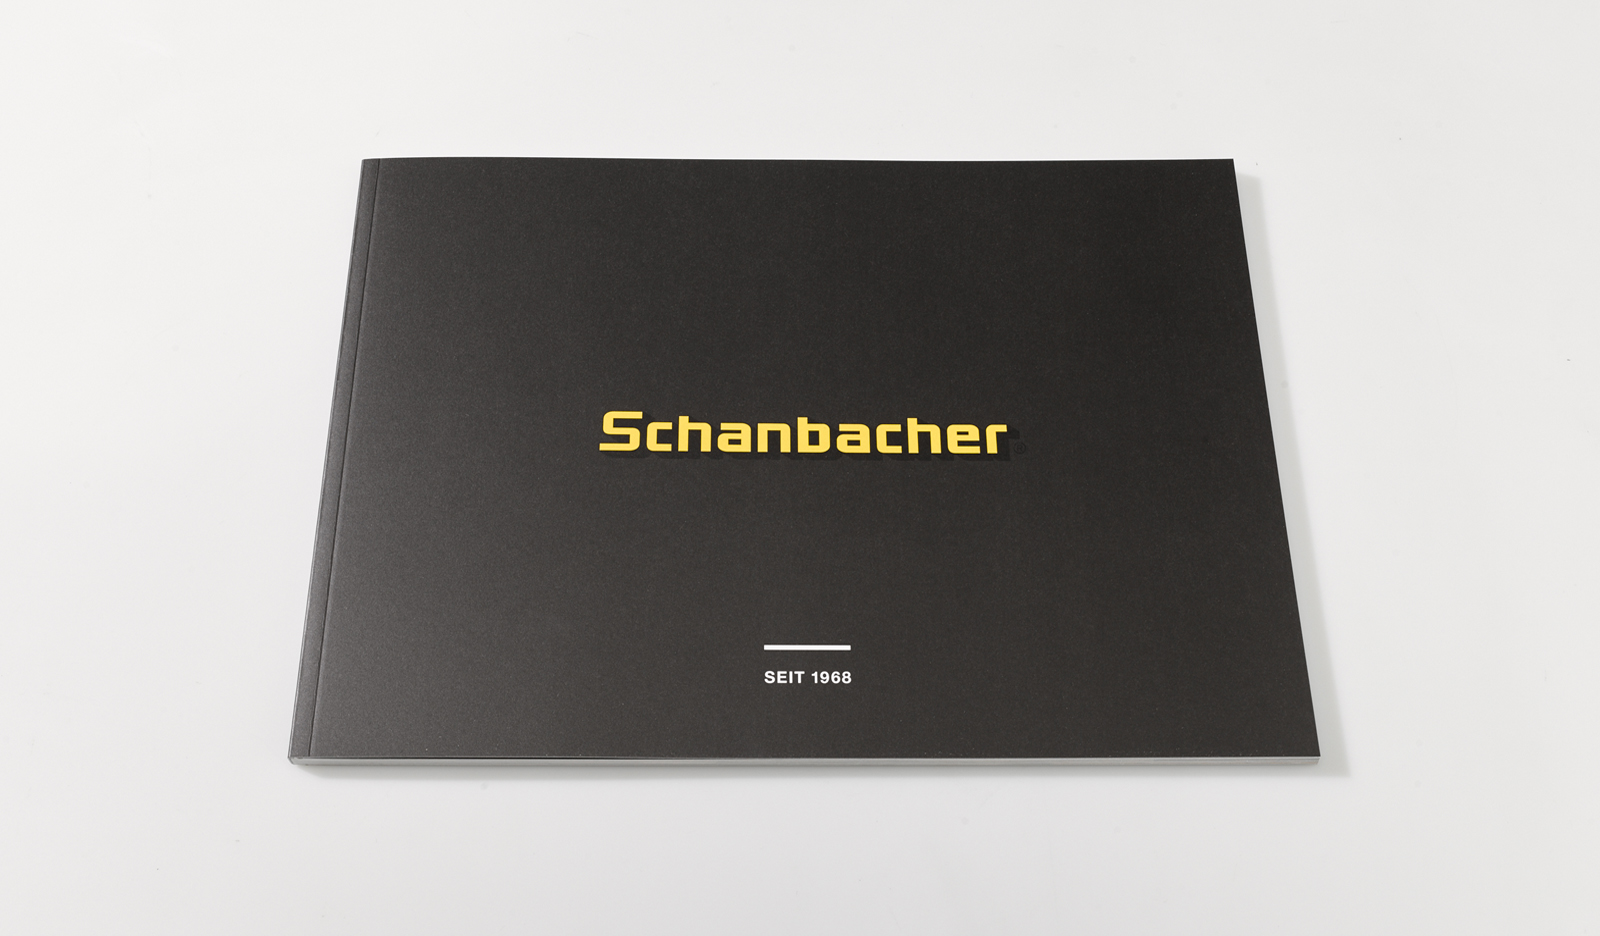 Schanbacher